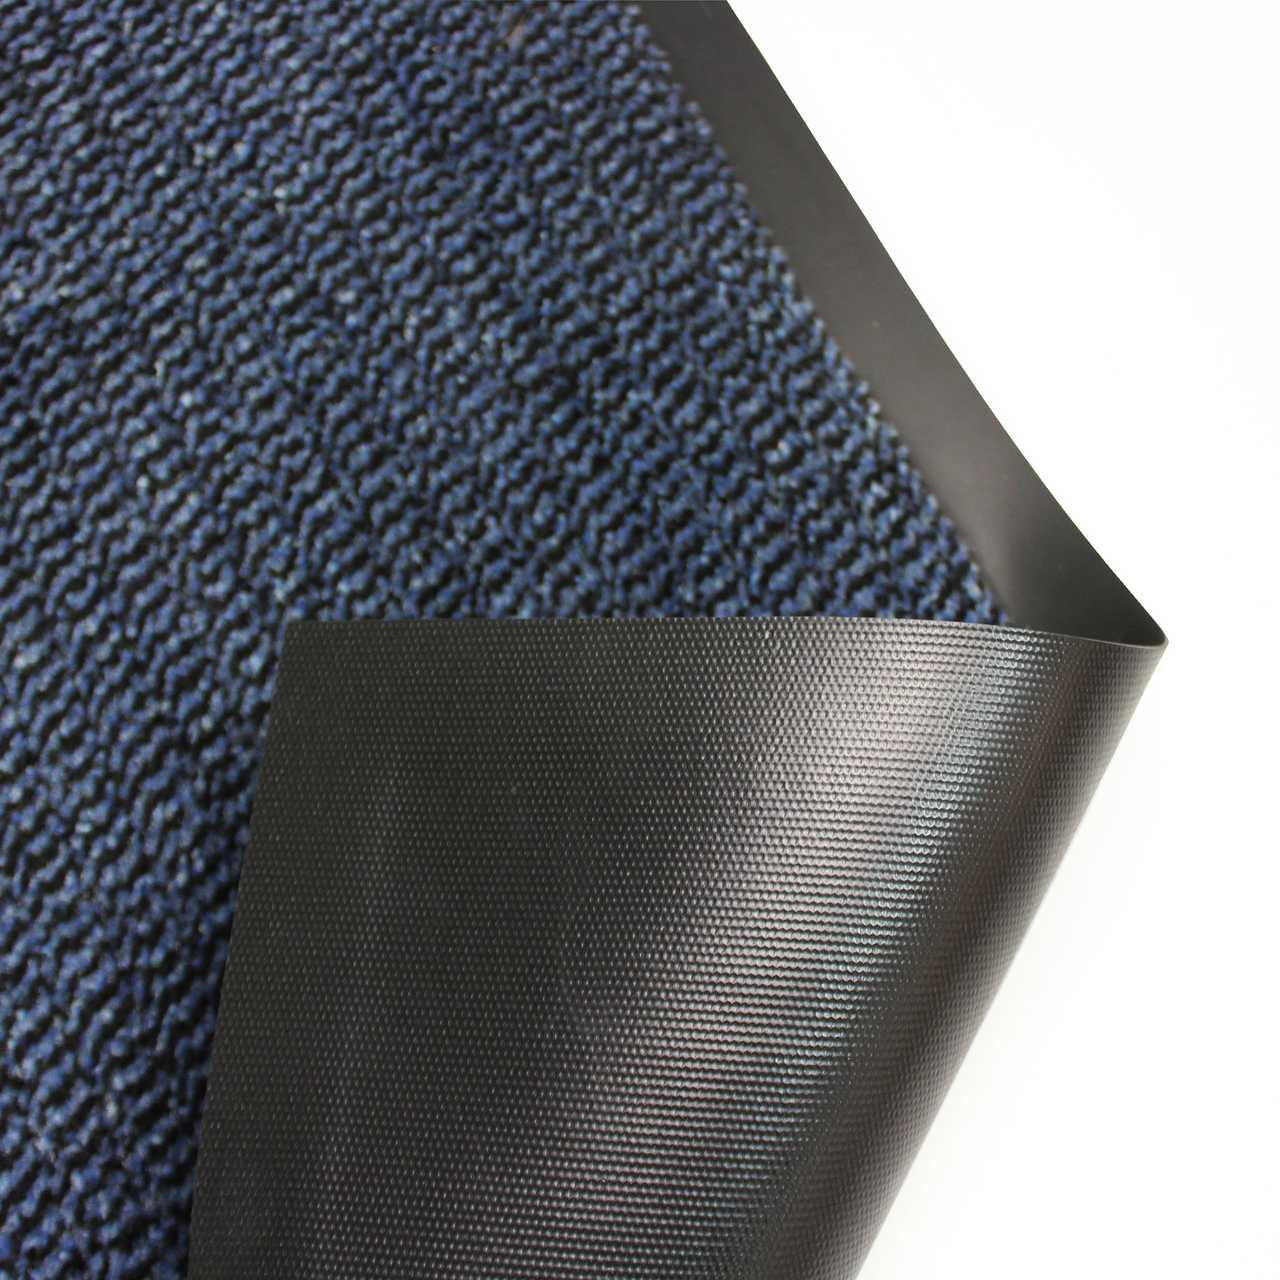 Ultralux Premium Indoor Outdoor Entrance Mat, Absorbent, Strong, Anti-Slip Entry  Rug Heavy Duty Doormat, Dark Gray